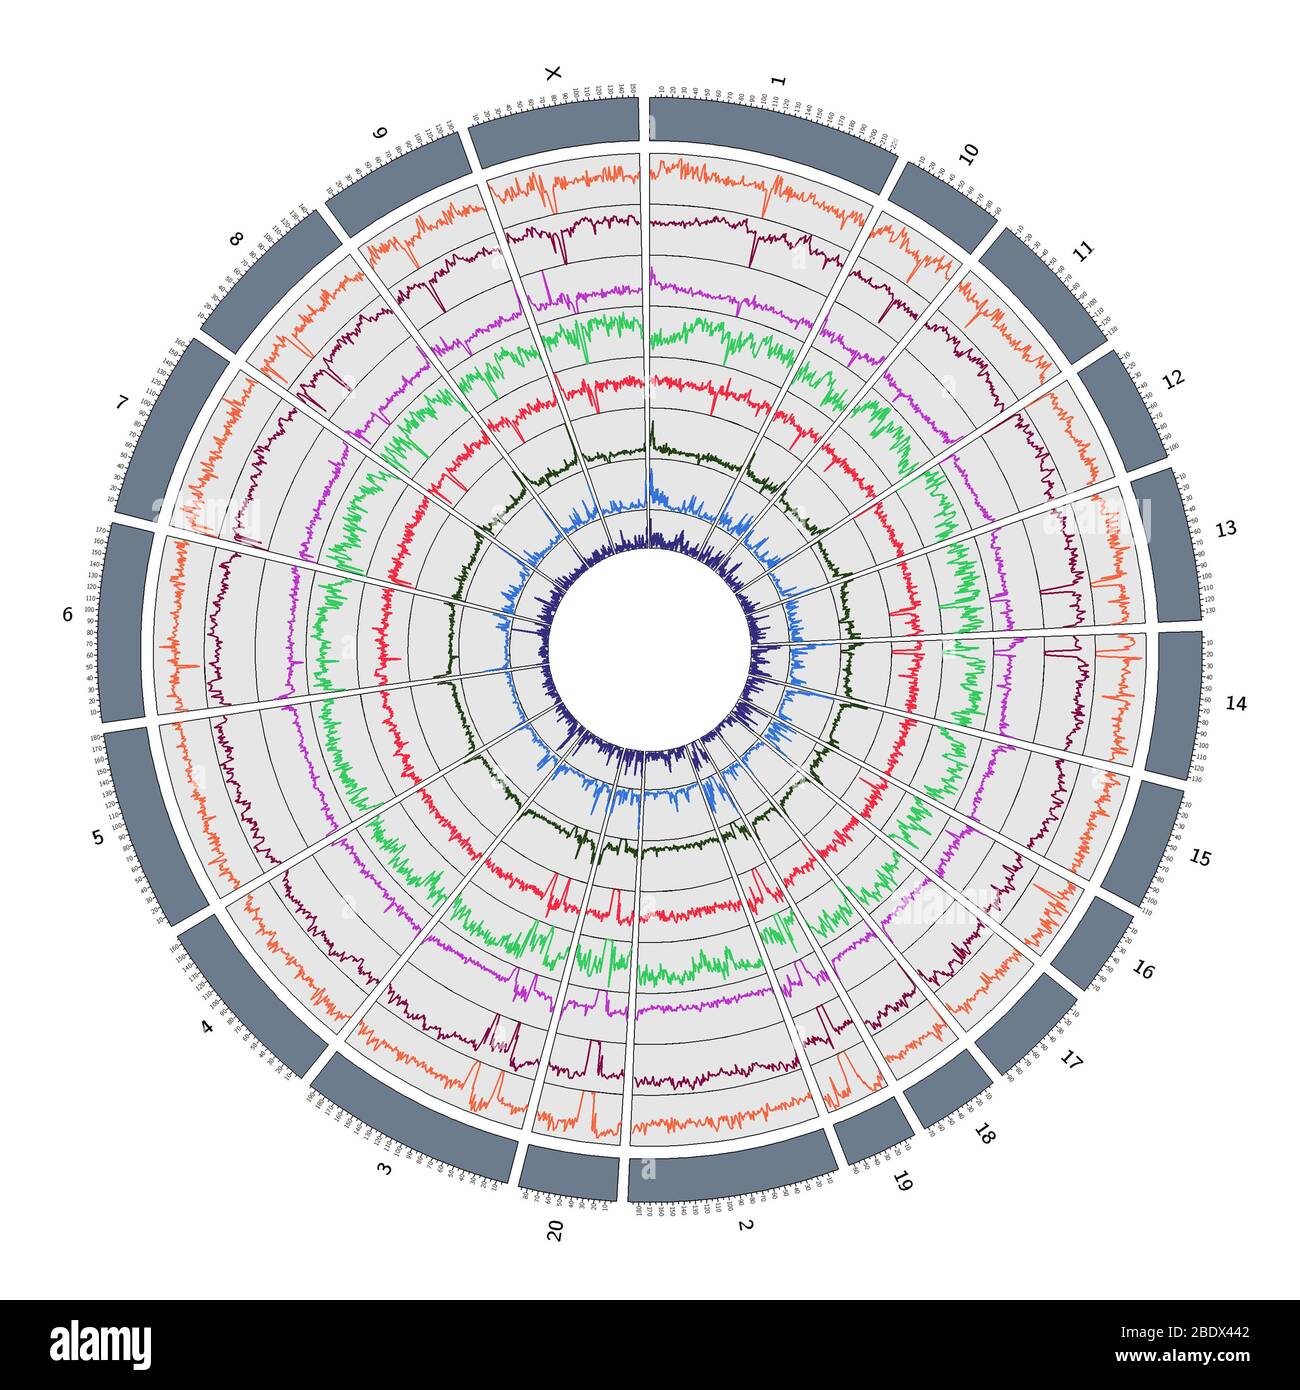 Circos, Circular Genome Map, Macaque Stock Photo